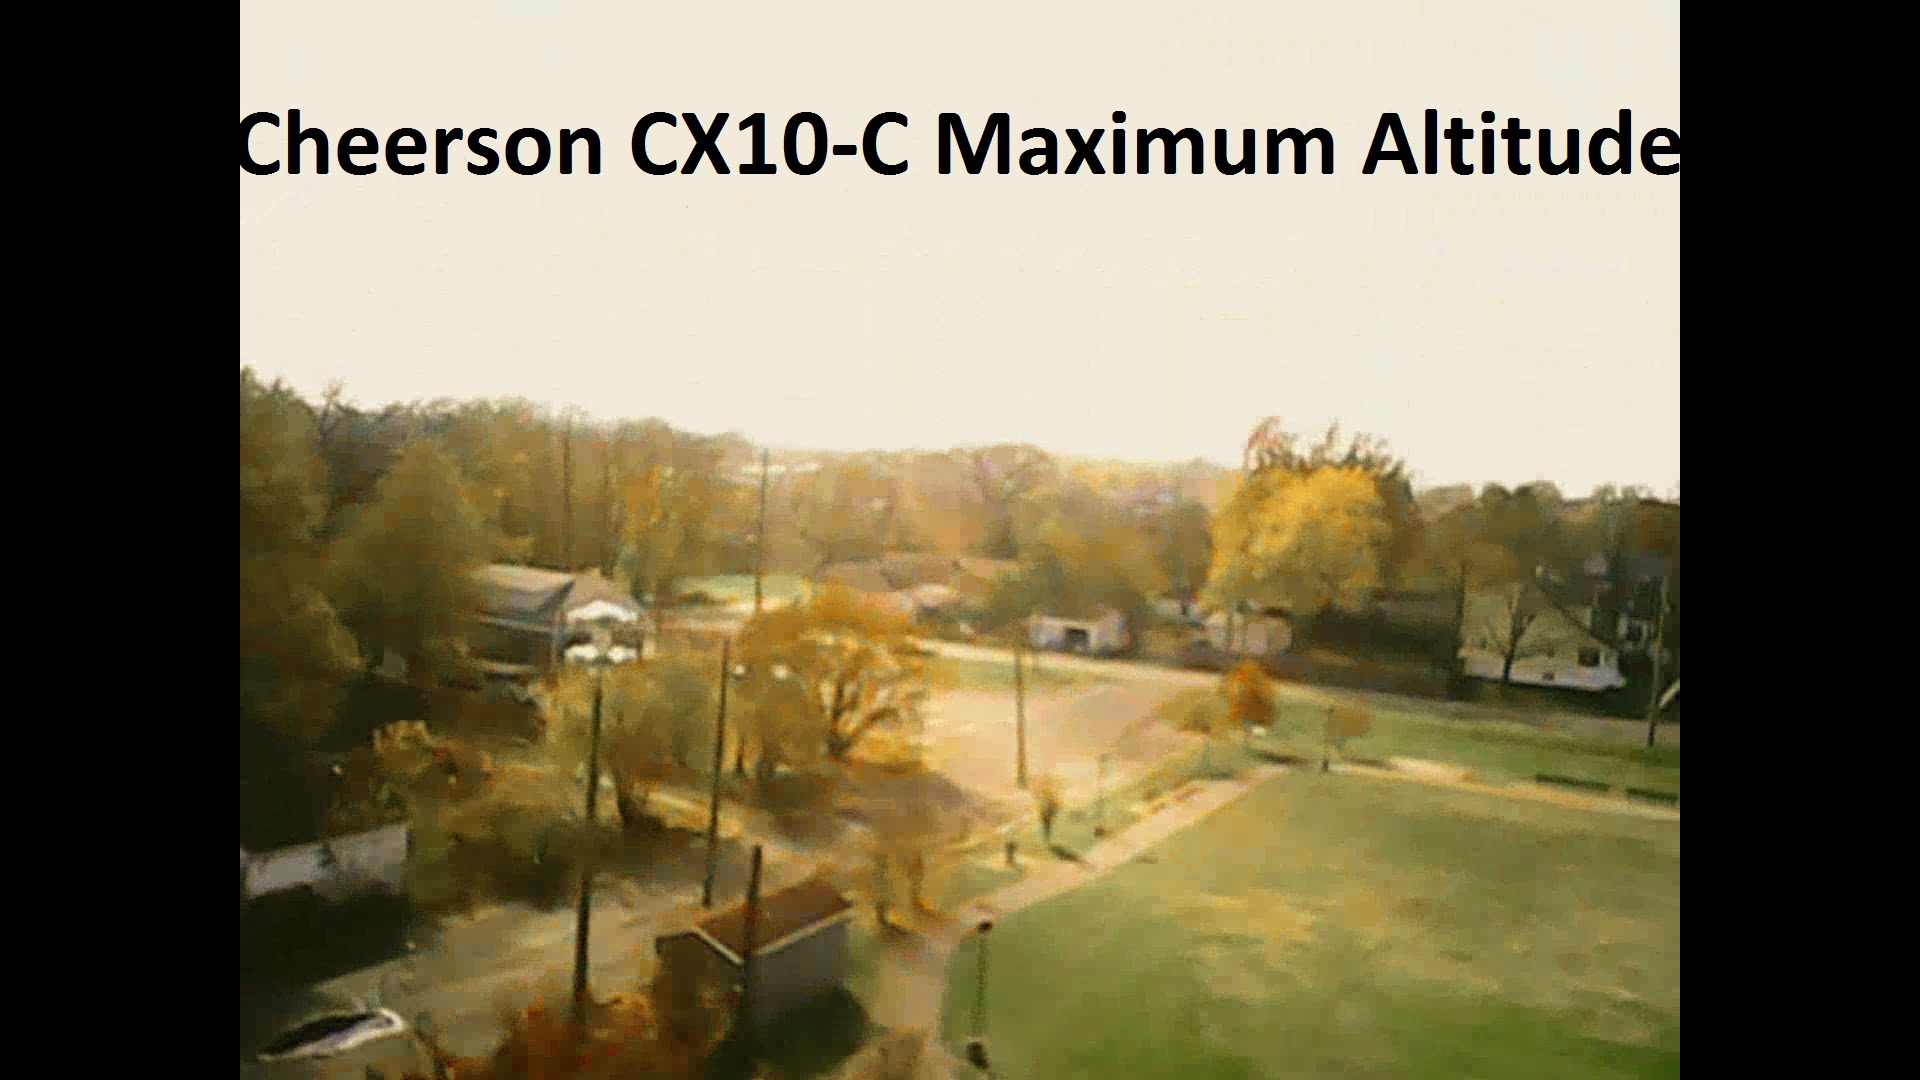 Cheerson CX10-C Quadcopter Maximum Altitude